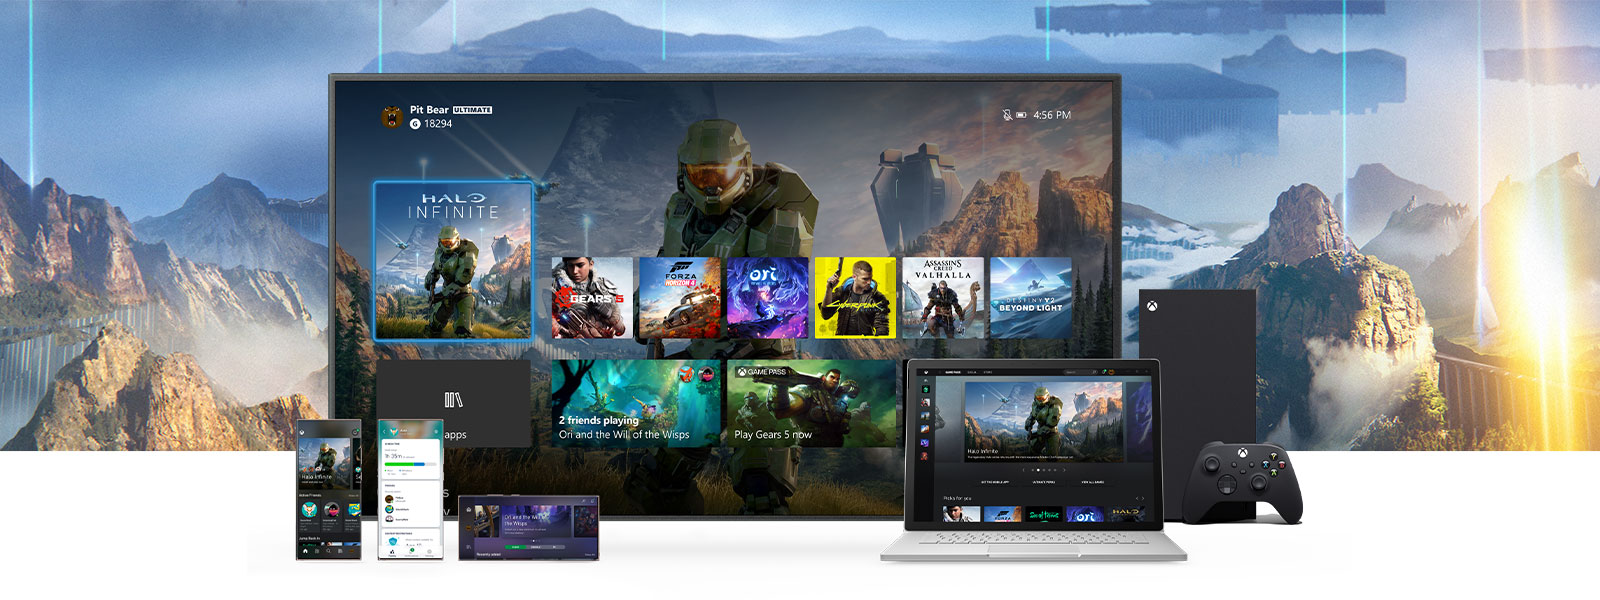 La Xbox Dashboard visualizzata su un televisore accanto a una Xbox Series X. Di fronte al televisore si trovano altri dispositivi, come un PC e dispositivi mobili.